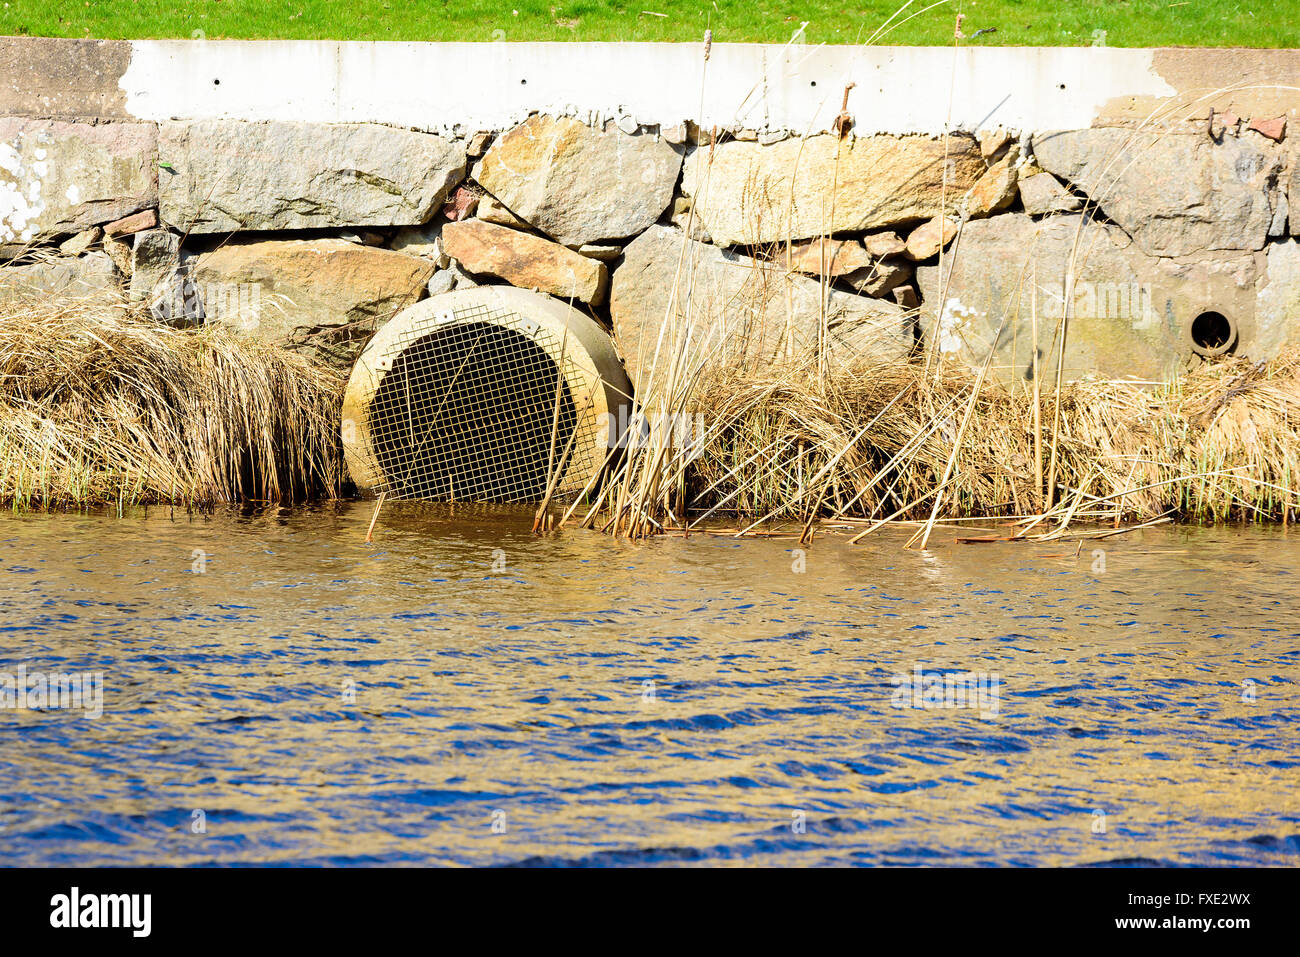 Déduits d'eaux pluviales en sortie d'une rivière avec des blocs de pierre et d'une partie d'une pelouse au-dessus. Banque D'Images